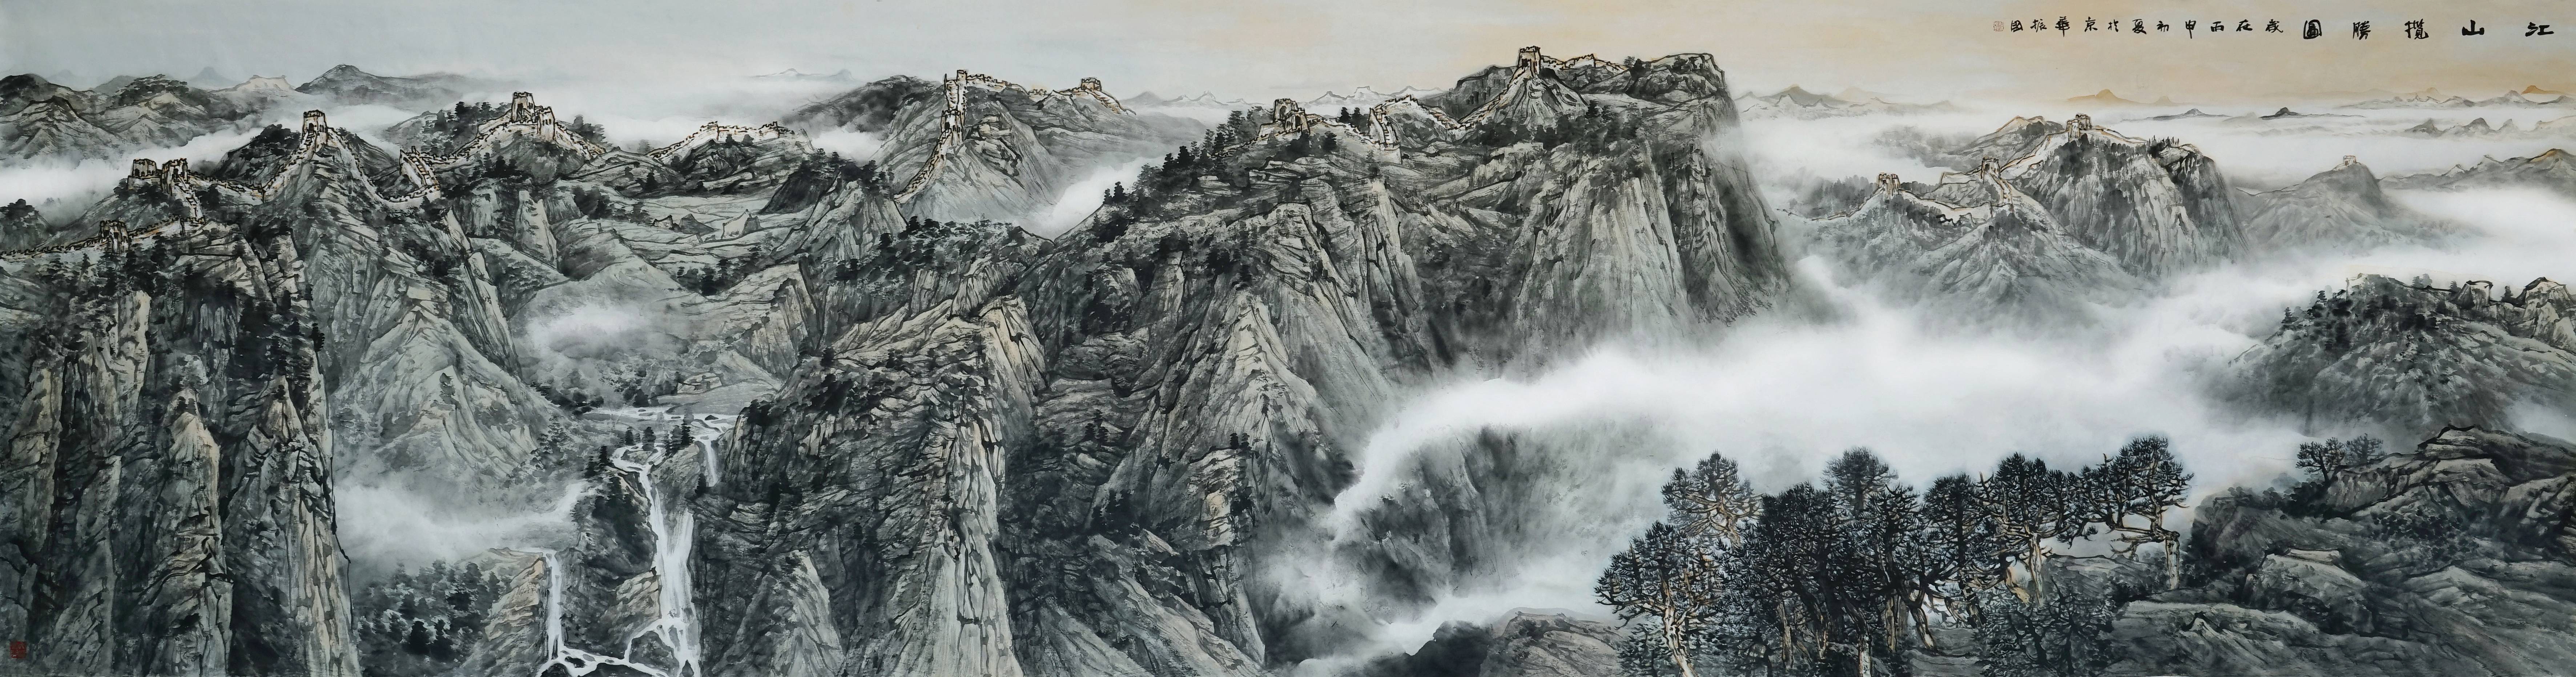 程振国笔下壮美的山水画卷,是一张张文化鲜明的外交名片